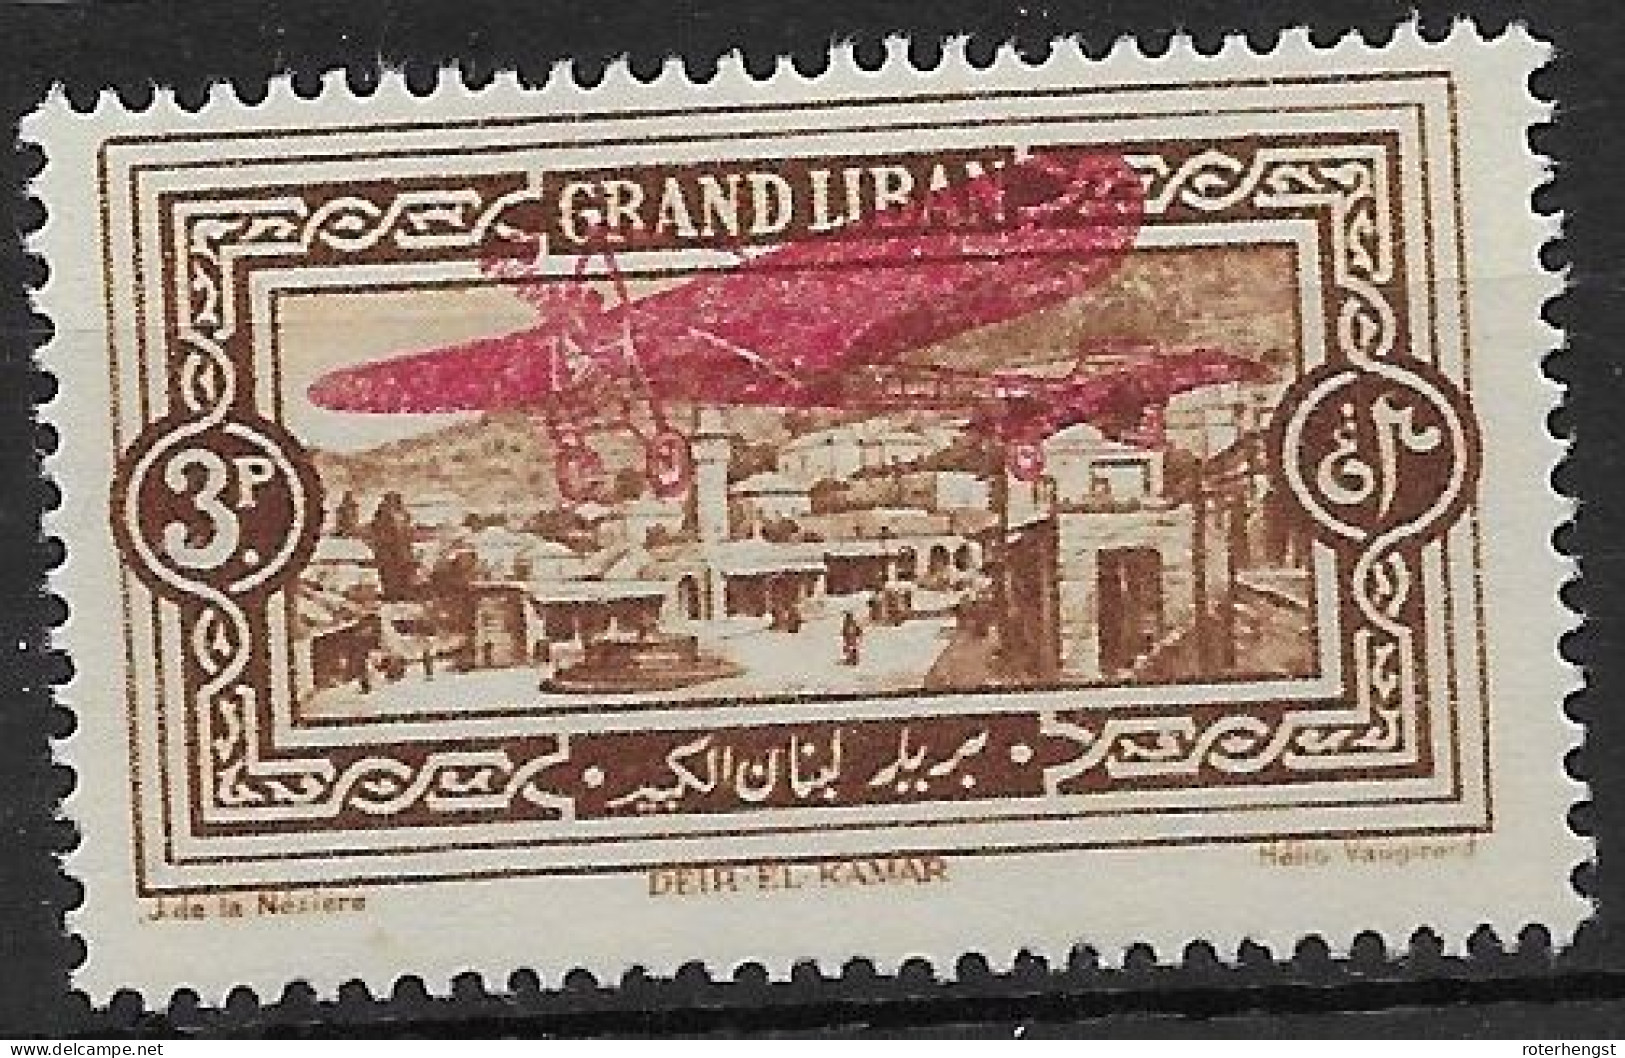 Grand Liban 1926 Airmail Mh* 5 Euros - Airmail